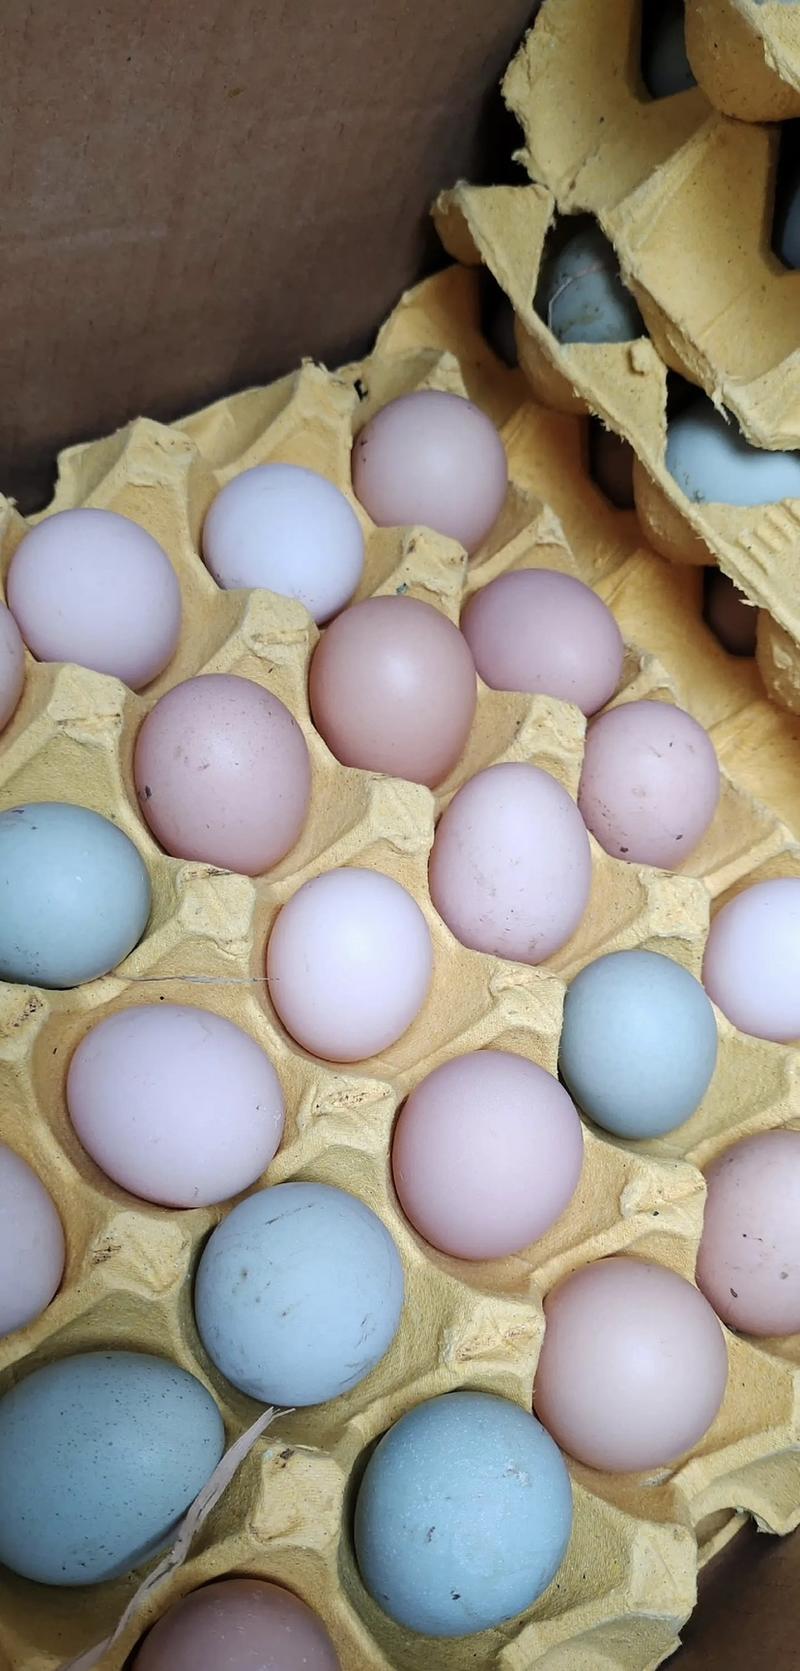 【包邮】土鸡蛋粉蛋绿壳鸡蛋的乌鸡蛋破损包赔